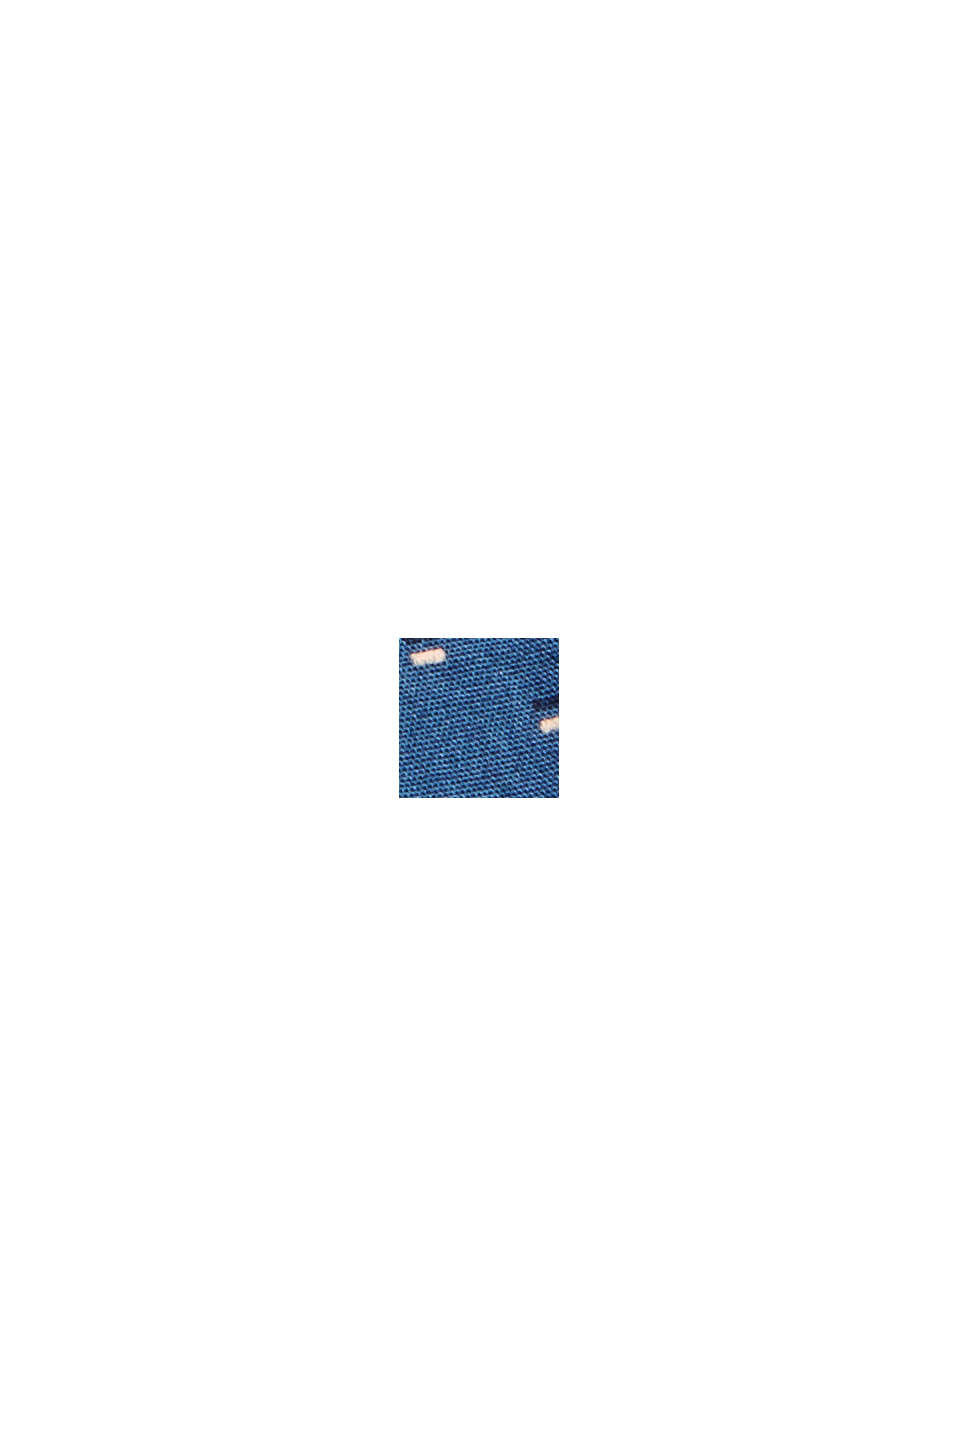 Camicia button-down con stampa, in 100% cotone biologico, DARK BLUE, swatch